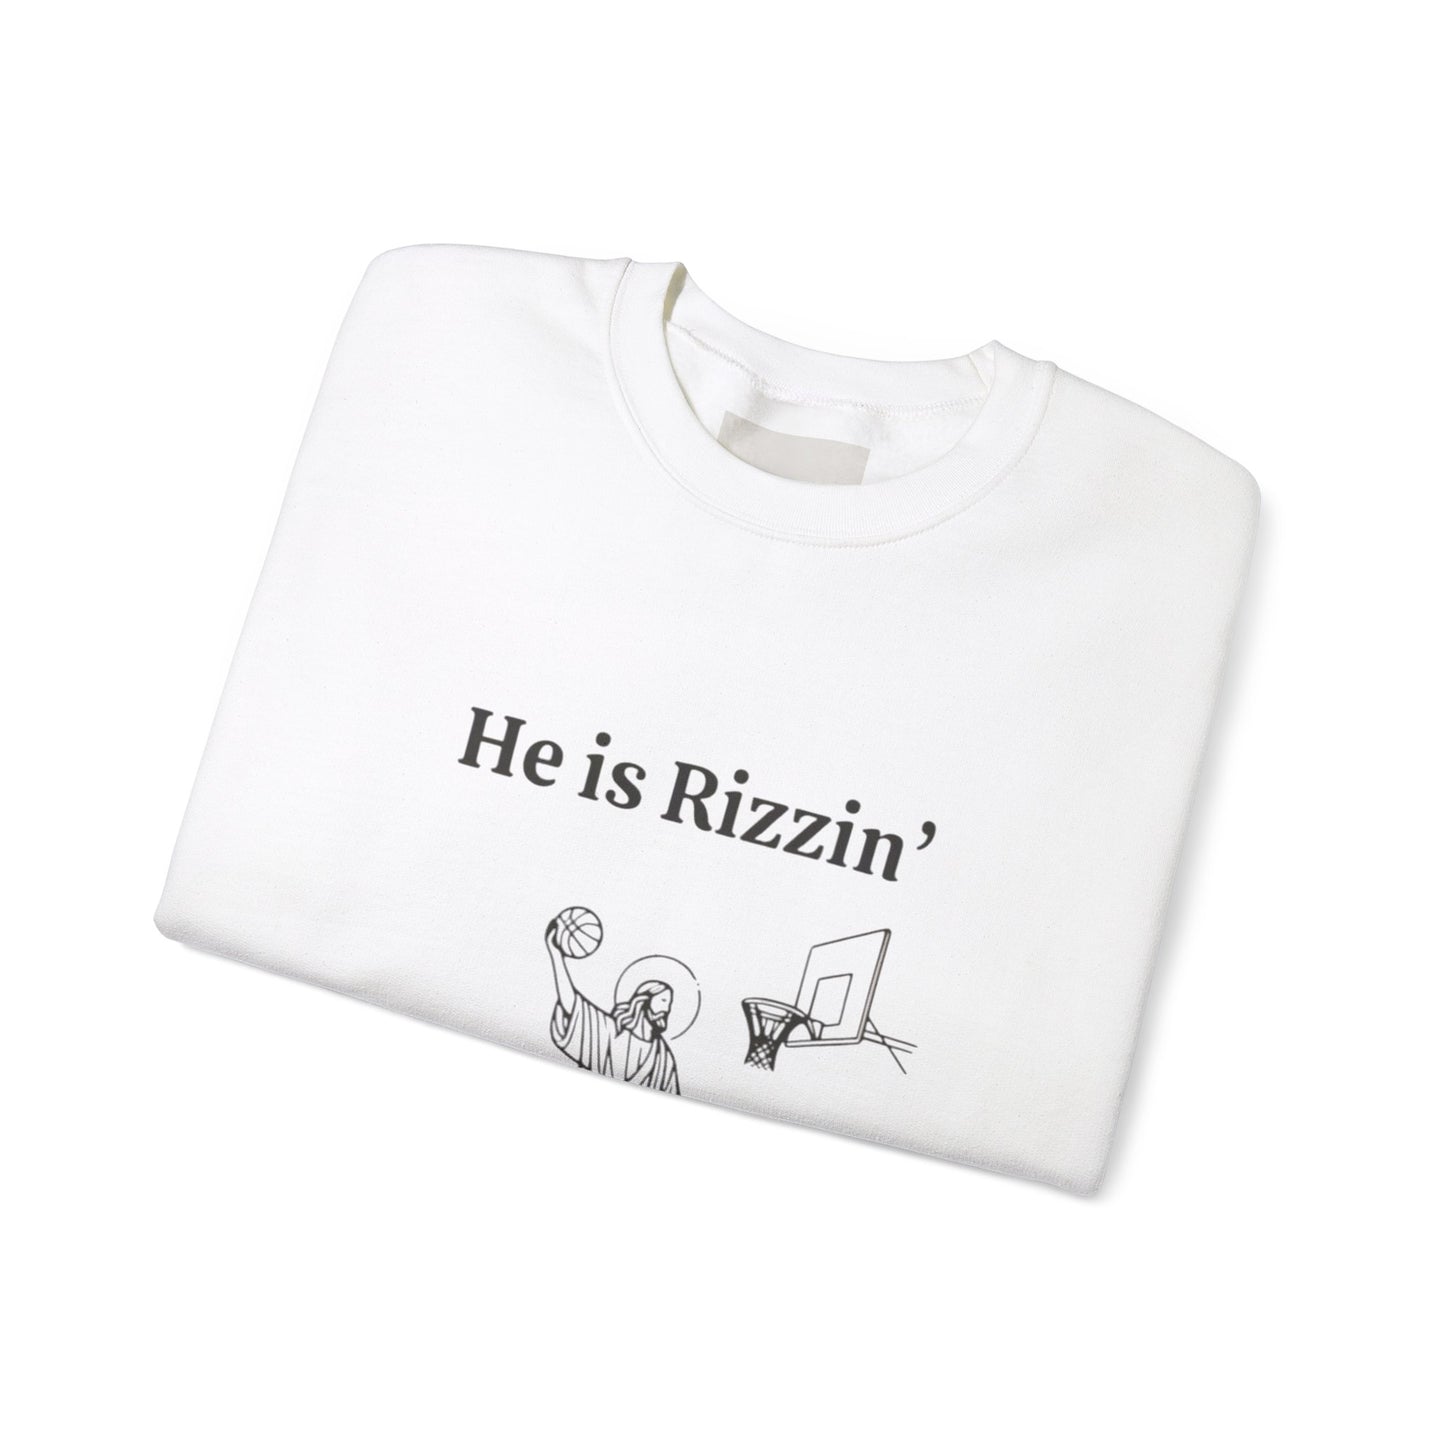 He is Rizzen, Unisex Heavy Cotton Sweatshirt